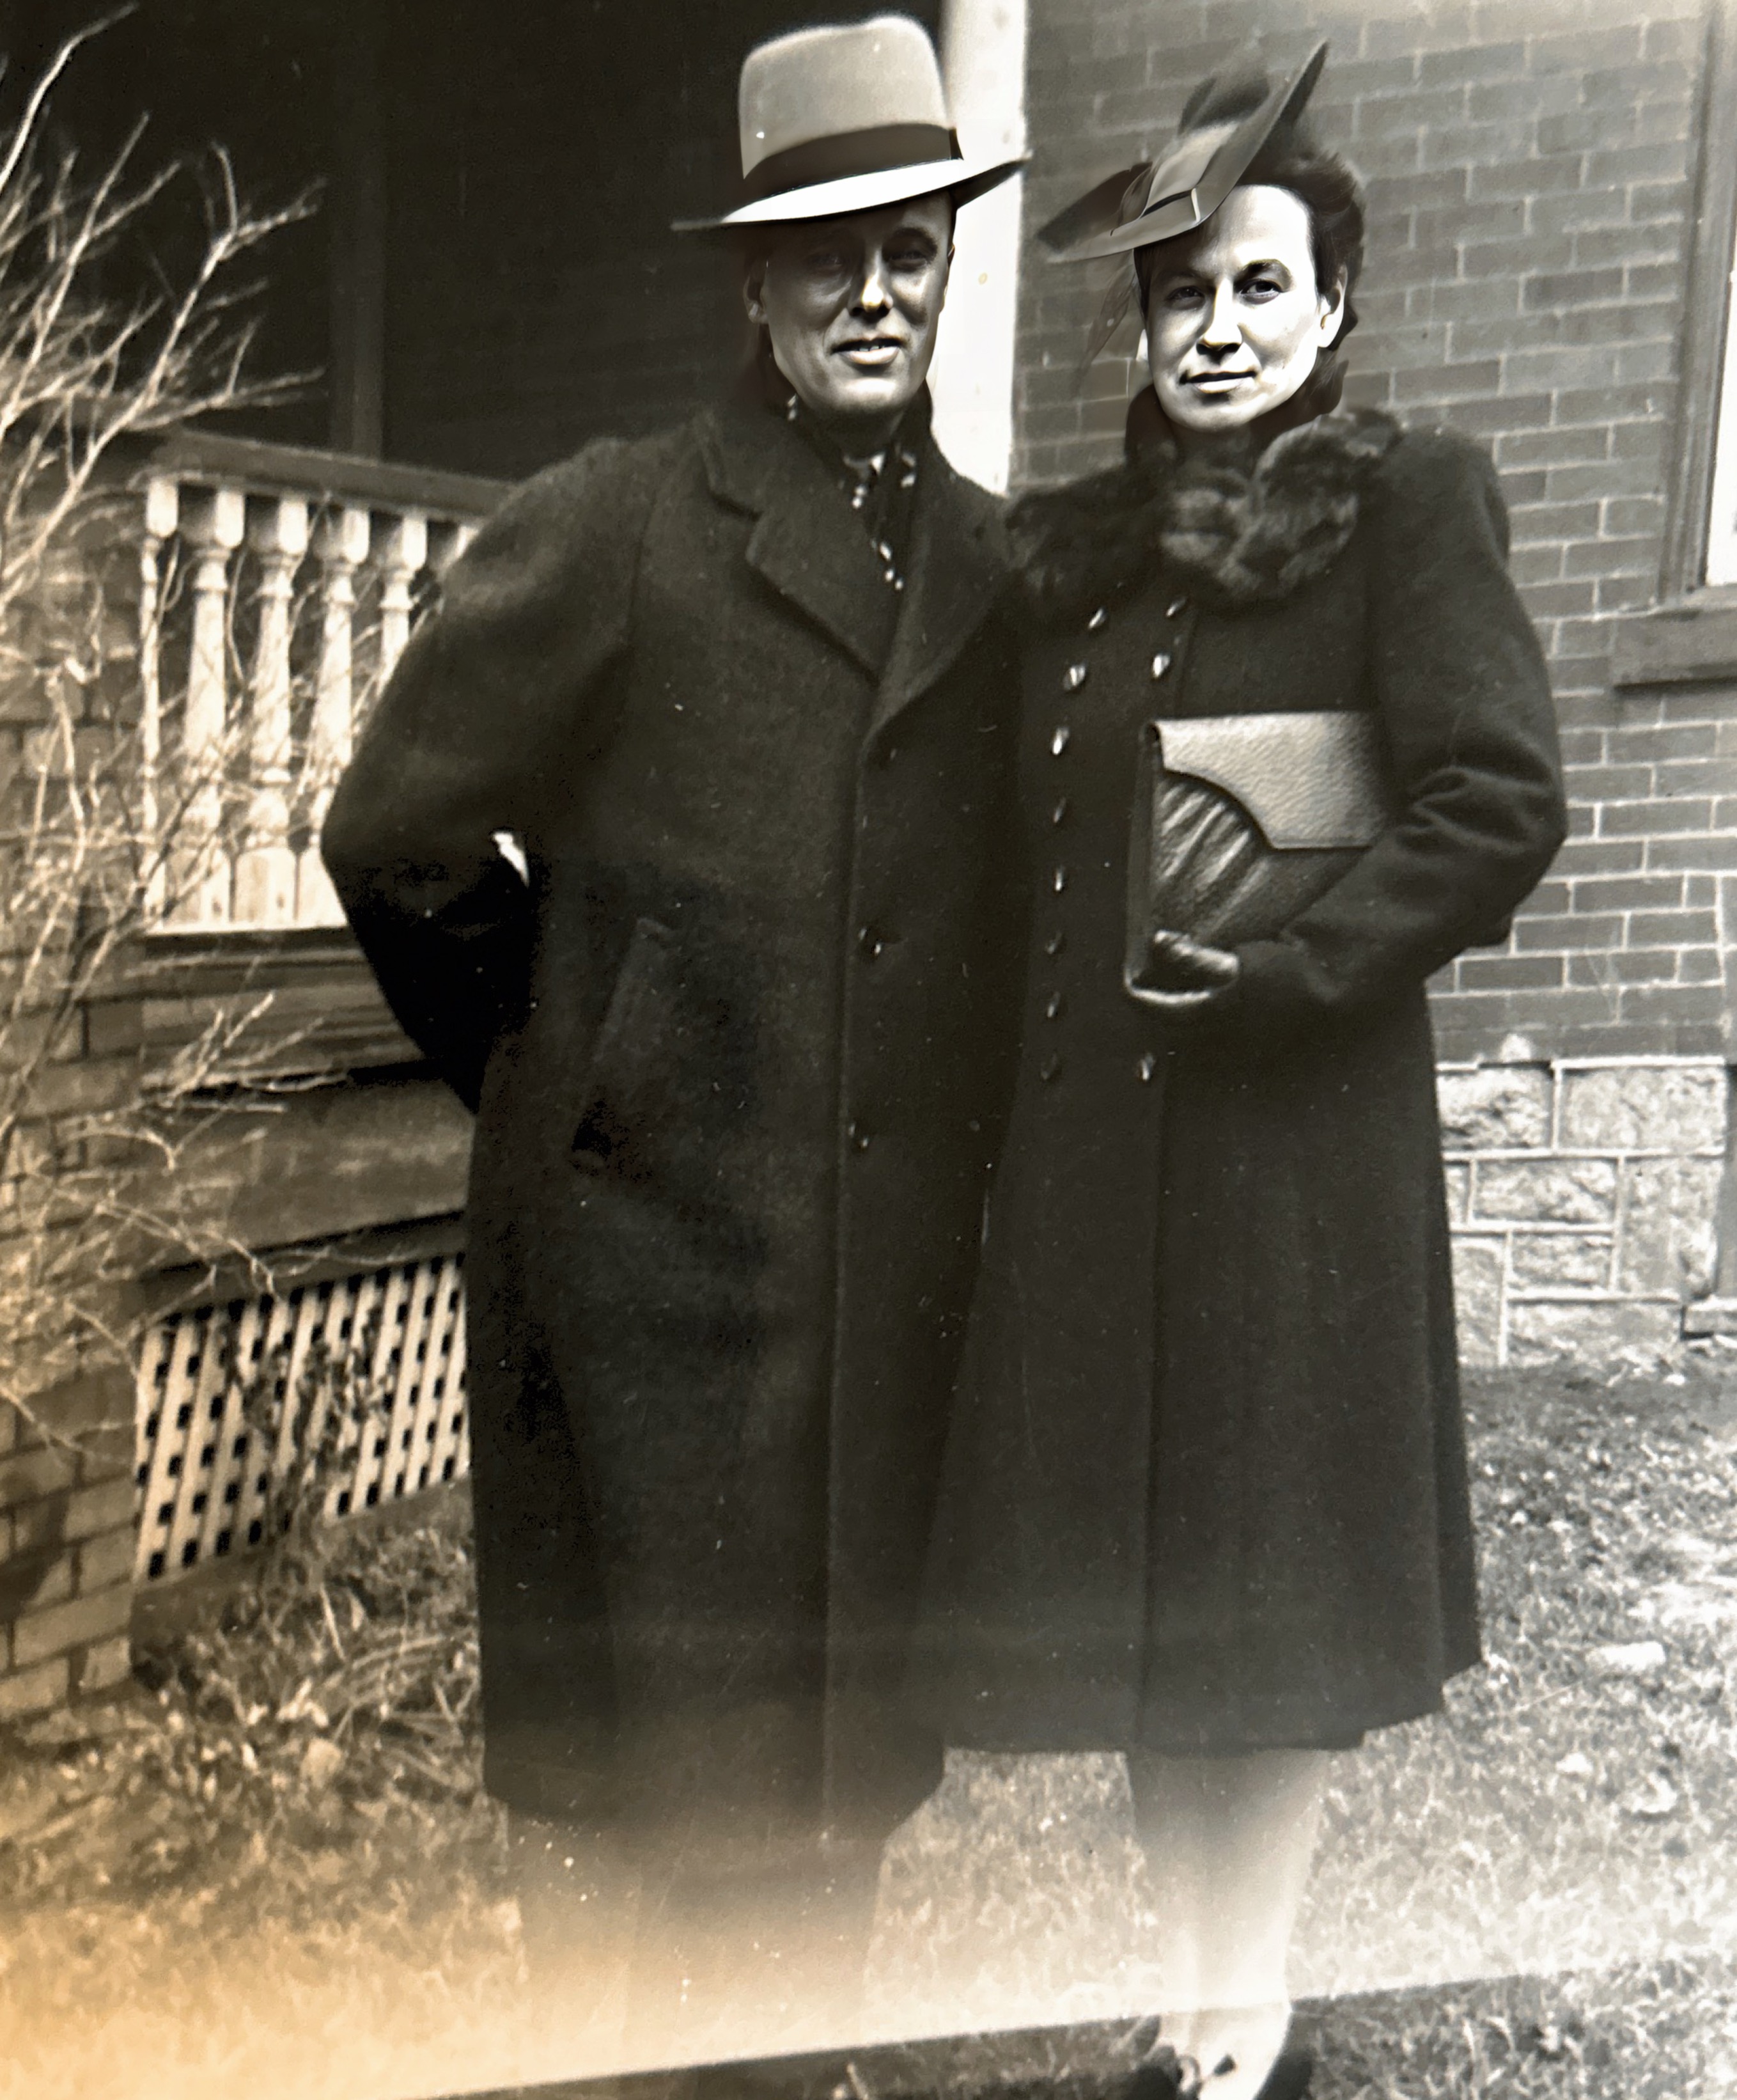 Grandma and grandpa McClure wedding day. November 21, 1942